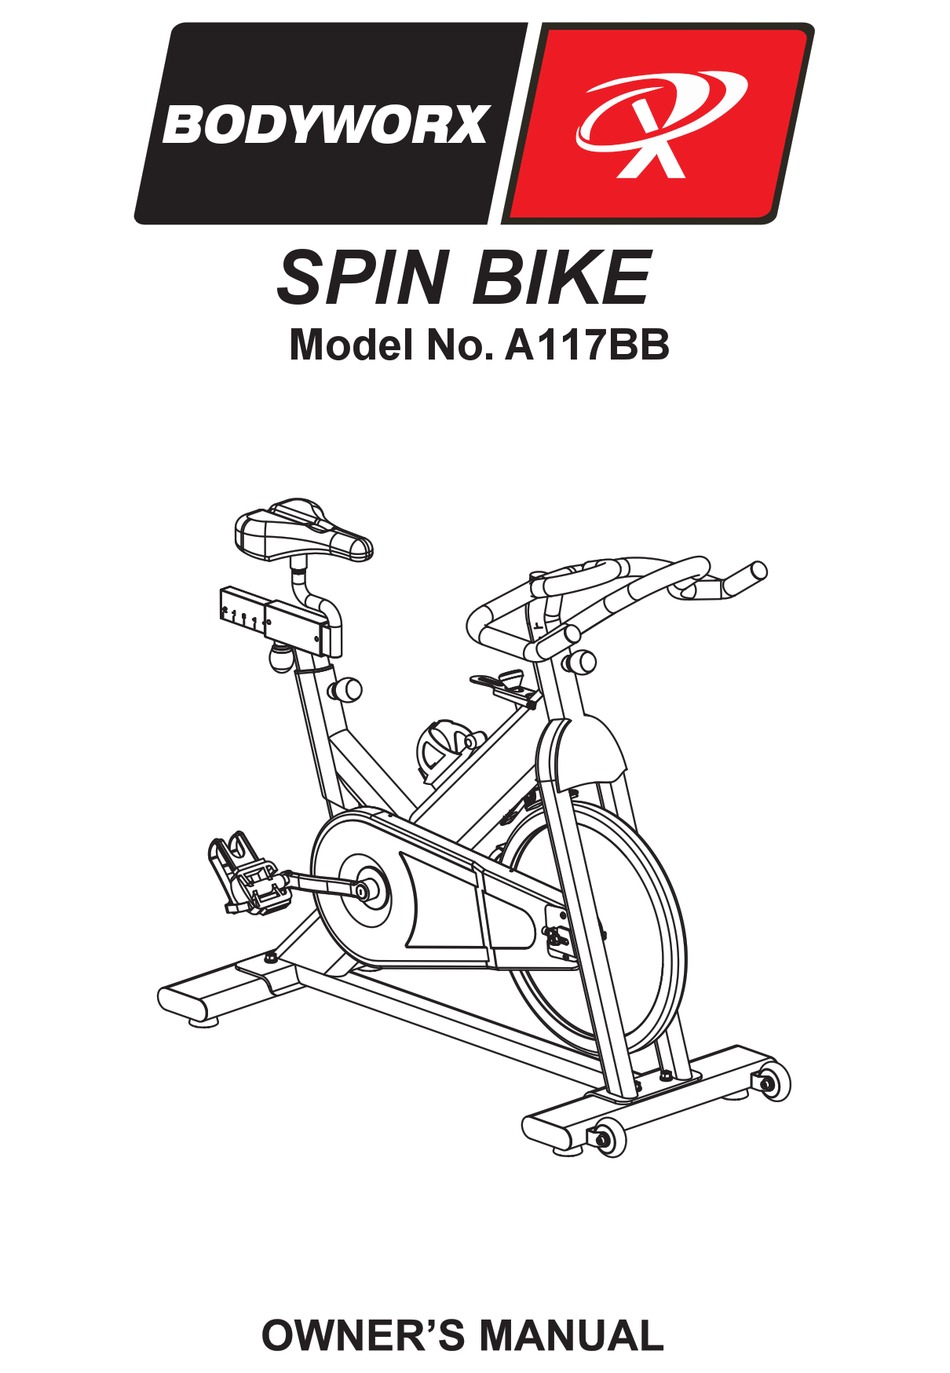 bodyworx spin bike